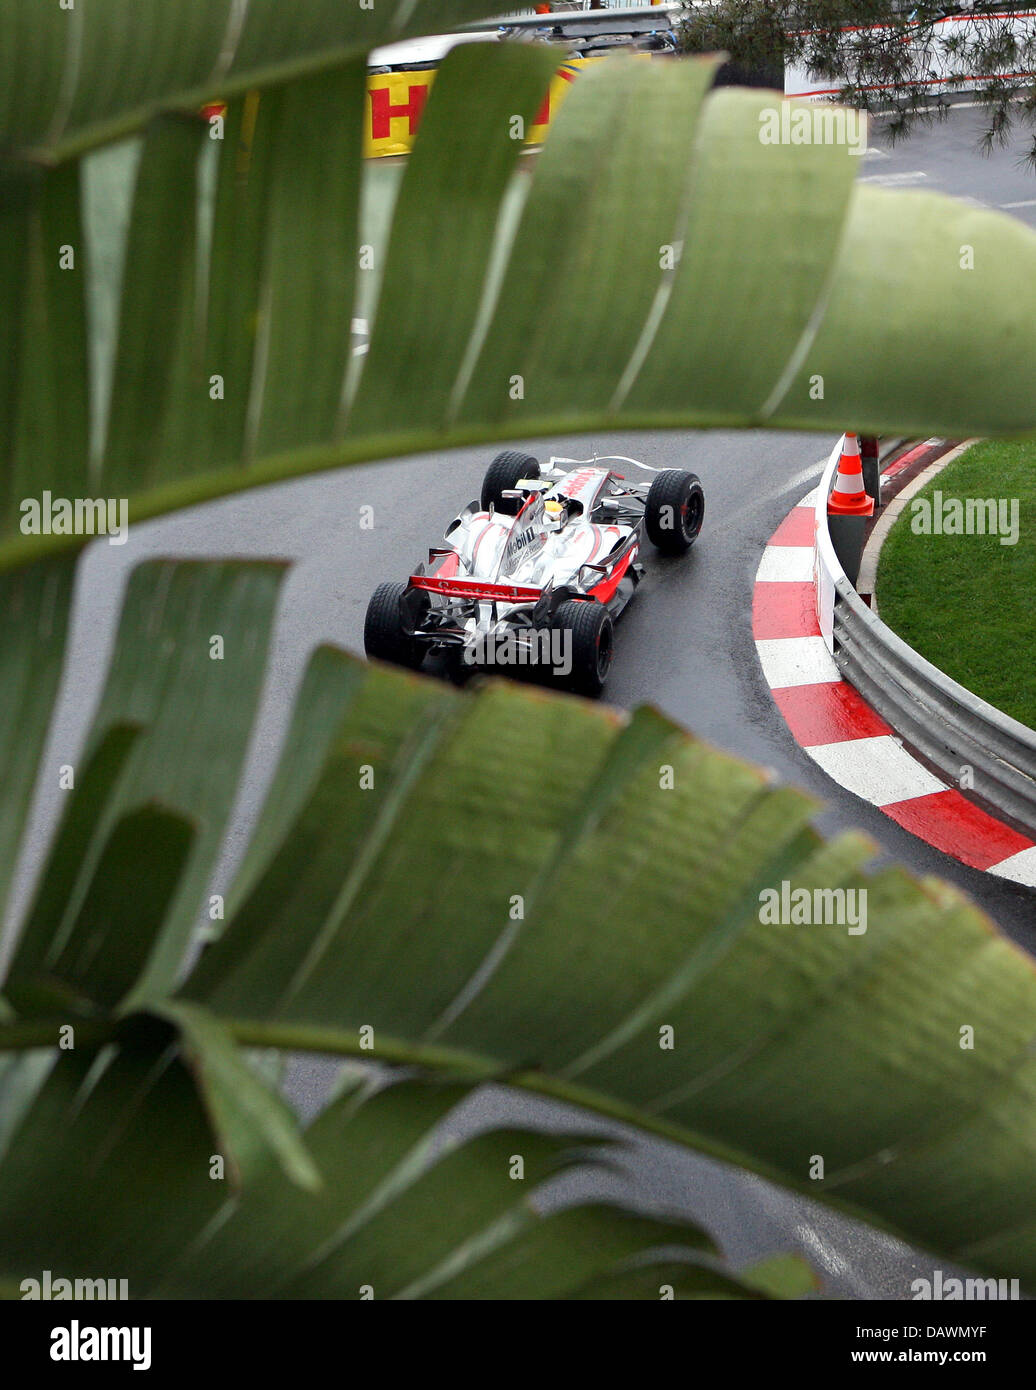 British Formula One rookie Lewis Hamilton della McLaren Mercedes manzi la sua auto per le strade di Monaco durante la terza sessione di prove per il Gran Premio di Monaco a Montecarlo, Monaco, 26 maggio 2007. Il 2007 Grand Prix di Formula 1 di Monaco ha luogo il 27 maggio 2007. Foto: ROLAND WEIHRAUCH Foto Stock